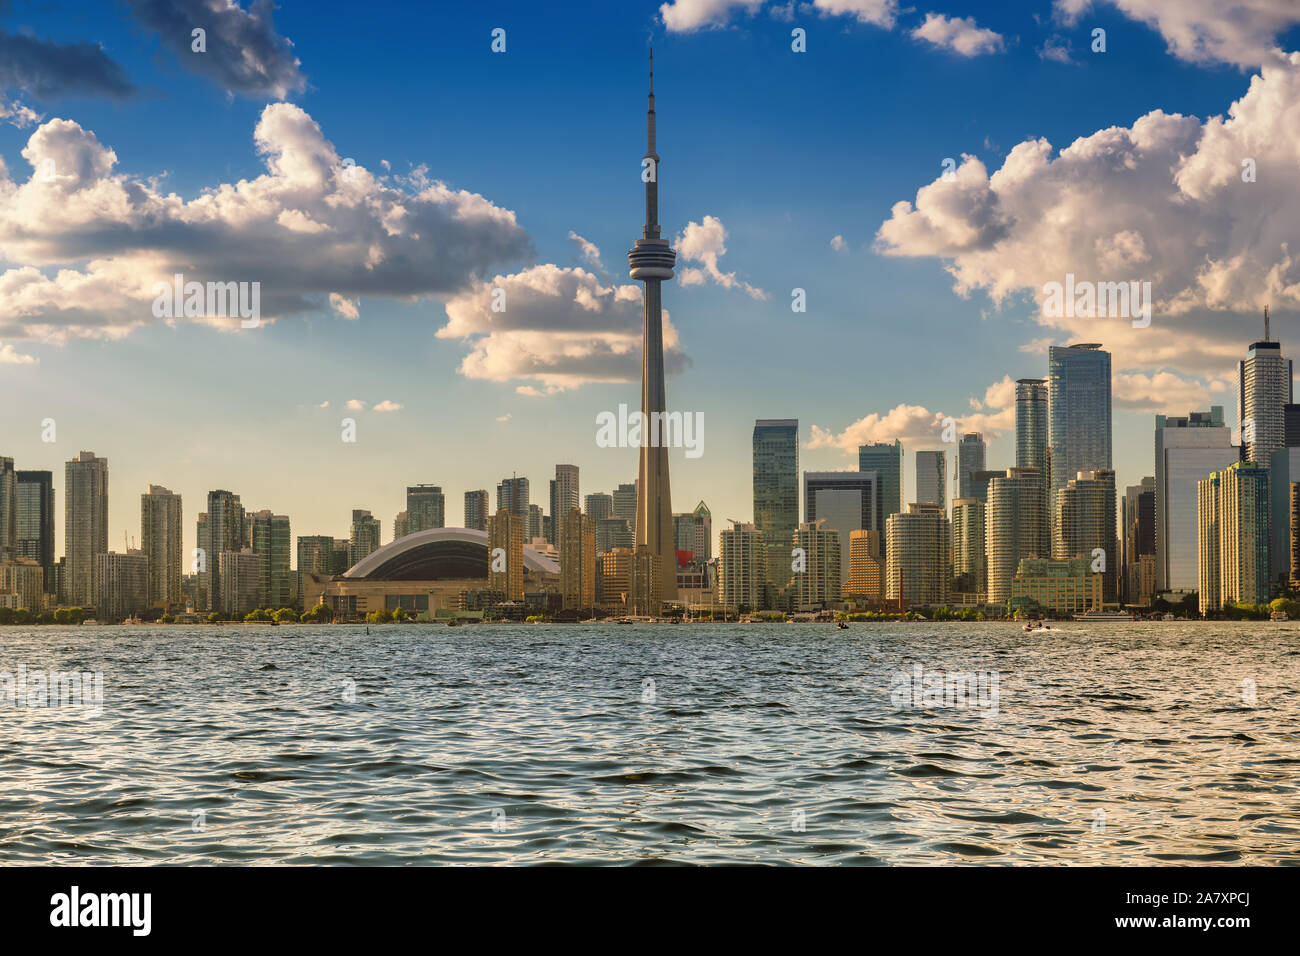 Beautiful Toronto skyline - Toronto, Ontario, Canada. Stock Photo